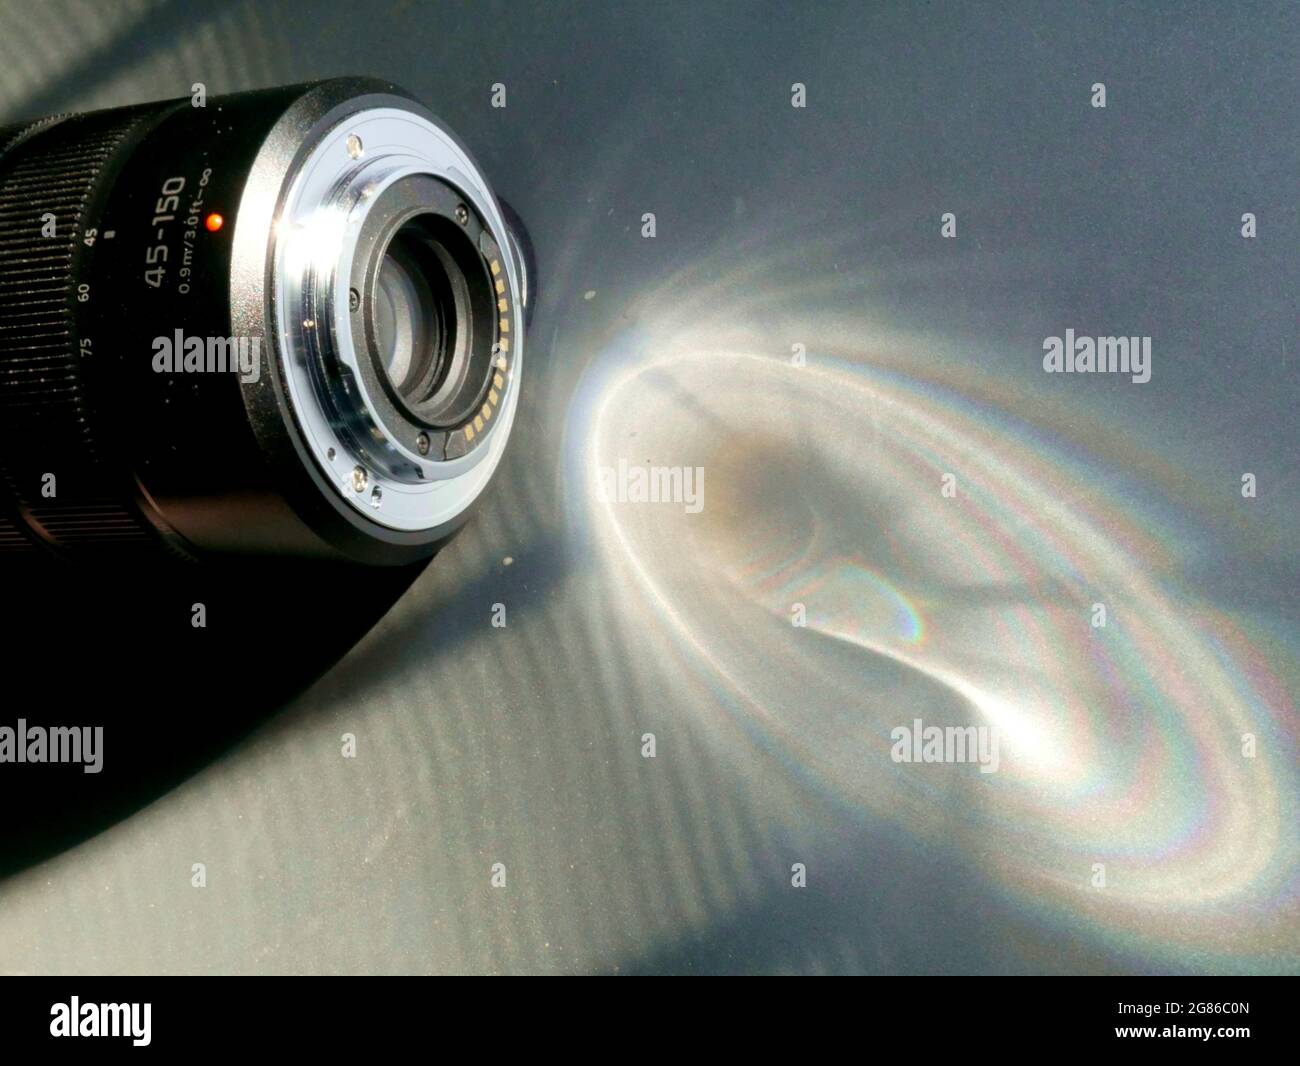 Le concept de mise au point de l'objectif zoom de l'appareil photo numérique est présenté avec une réflexion de la lumière du soleil sur le cadre latéral. Banque D'Images